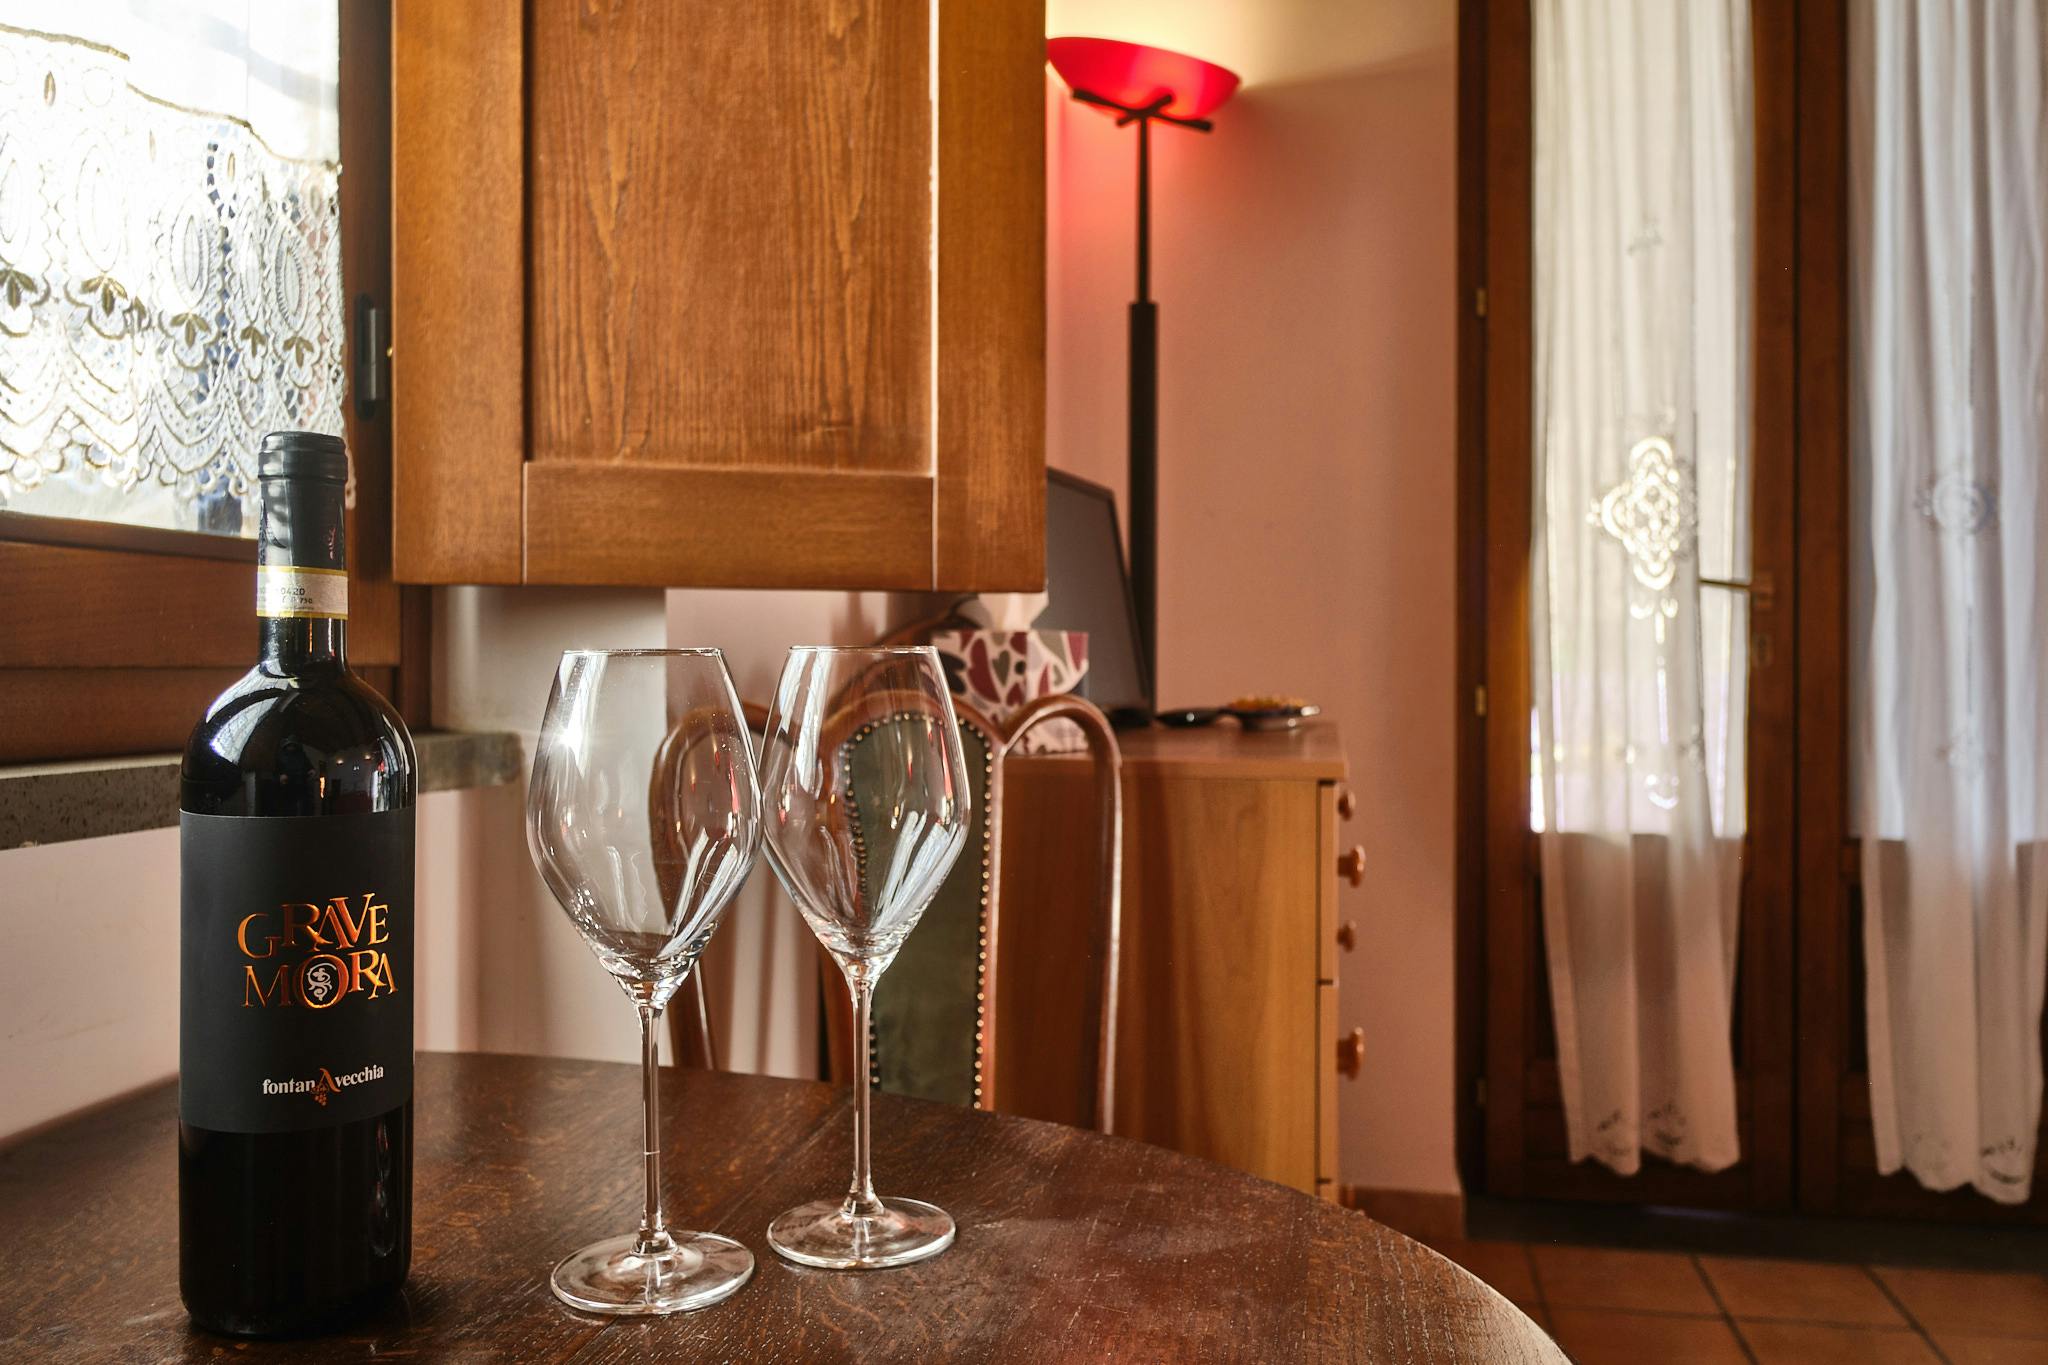 Dettaglio di due calici e una bottiglia di vino Grave Mora delle cantine Fontana Vecchia sul tavolino dello Chalet della tenuta Le Pietre a Pietrelcina